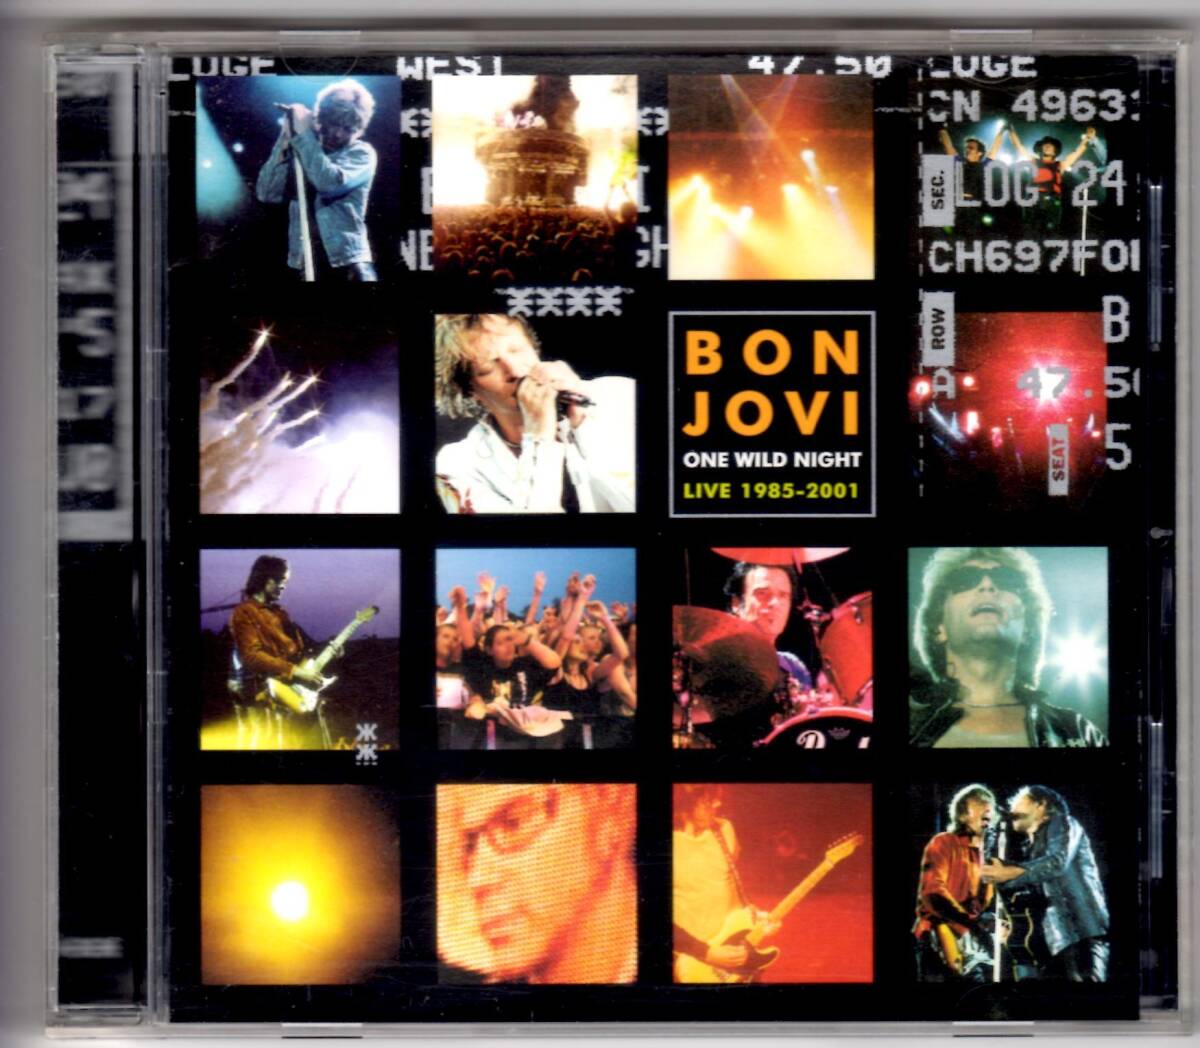 Used CD 輸入盤 ボン・ジョヴィ Bon Jovi『ワン・ワイルド・ナイト』- One Wild Night Live 1985-2001(2001年) 全15曲アメリカ盤